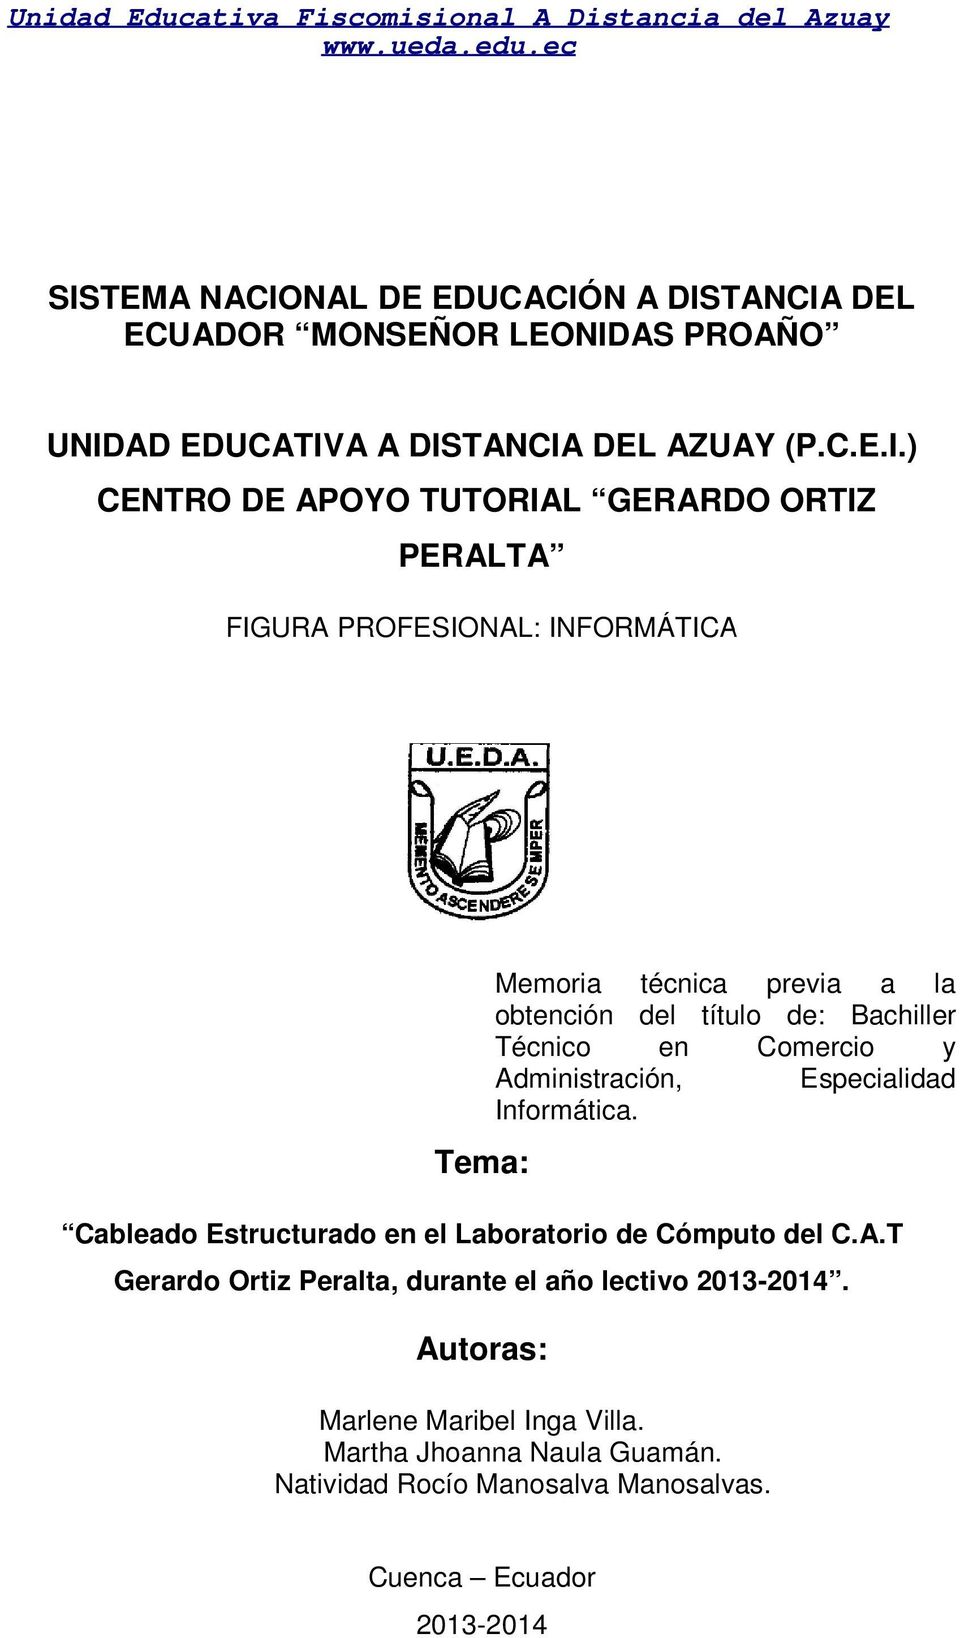 Comercio y Administración, Especialidad Informática. Tema: Cableado Estructurado en el Laboratorio de Cómputo del C.A.T Gerardo Ortiz Peralta, durante el año lectivo 2013-2014.